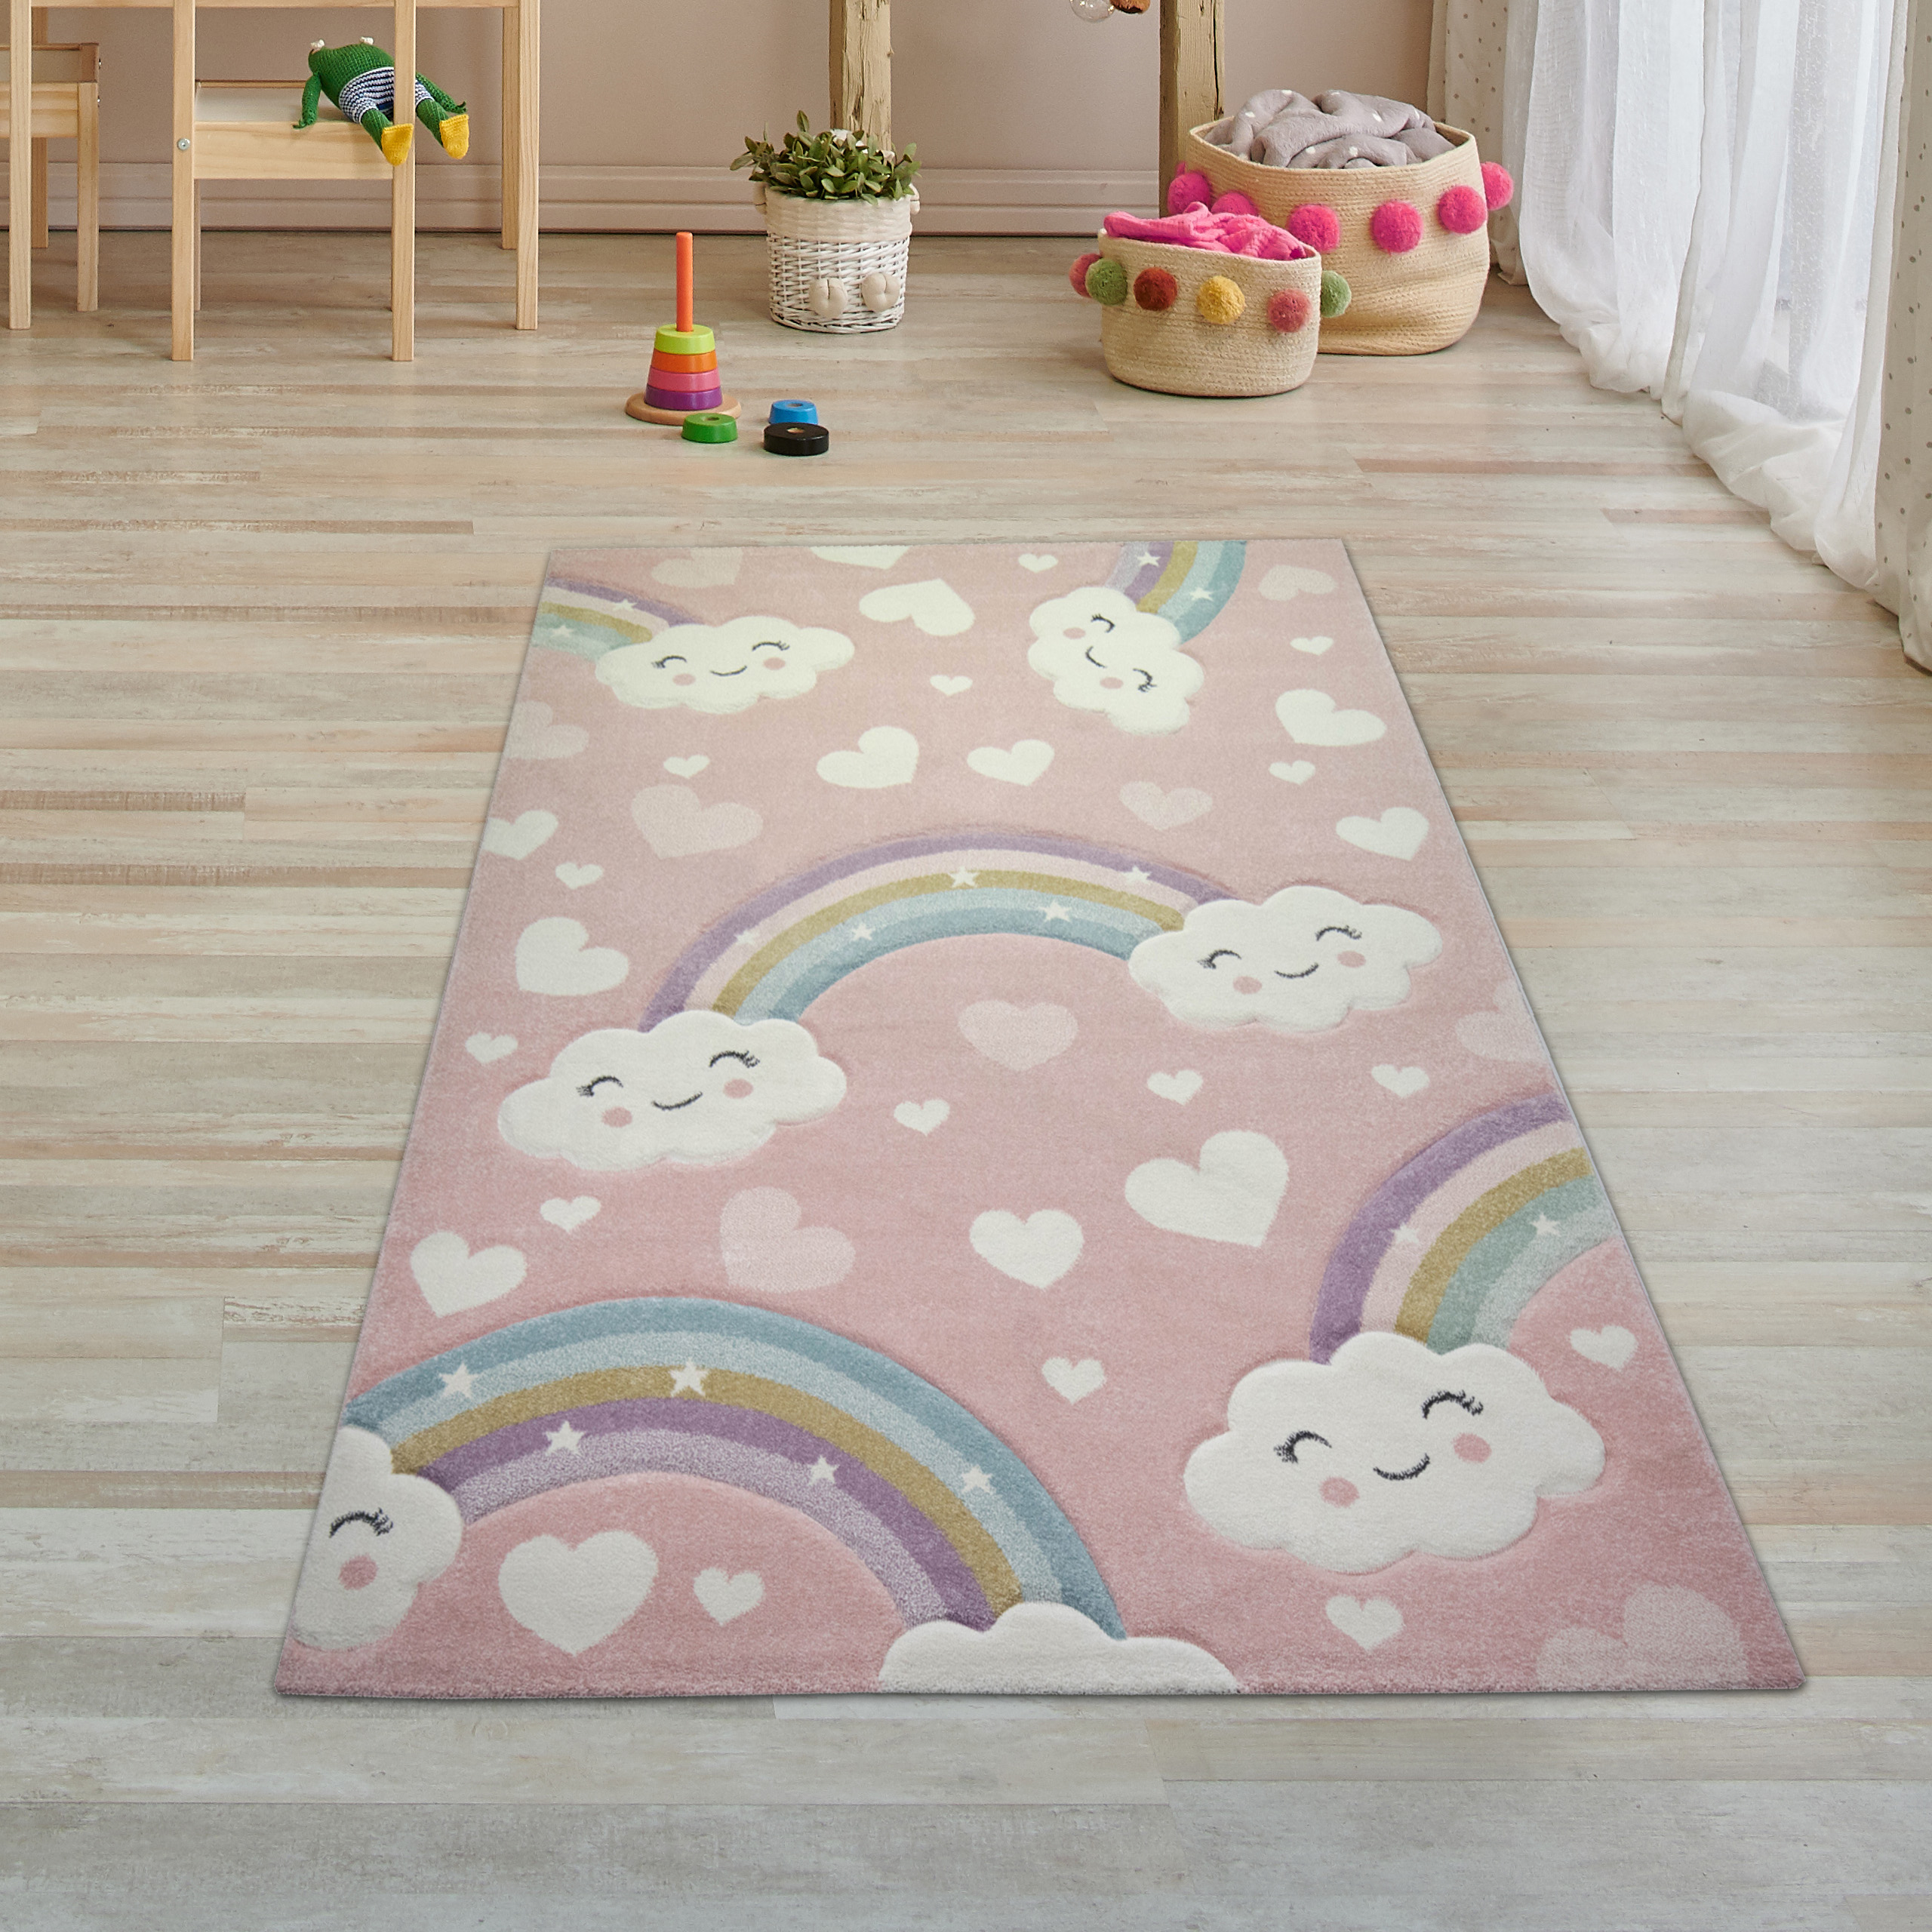 EchtHomes Mond Runder Teppich SchlafbodenTeppich Rutschfeste Wolken Teppiche  AntiRutschmatte für Babys Kinderzimmer Teppiche Rosa Teppich für  Kinderzimmer - .de